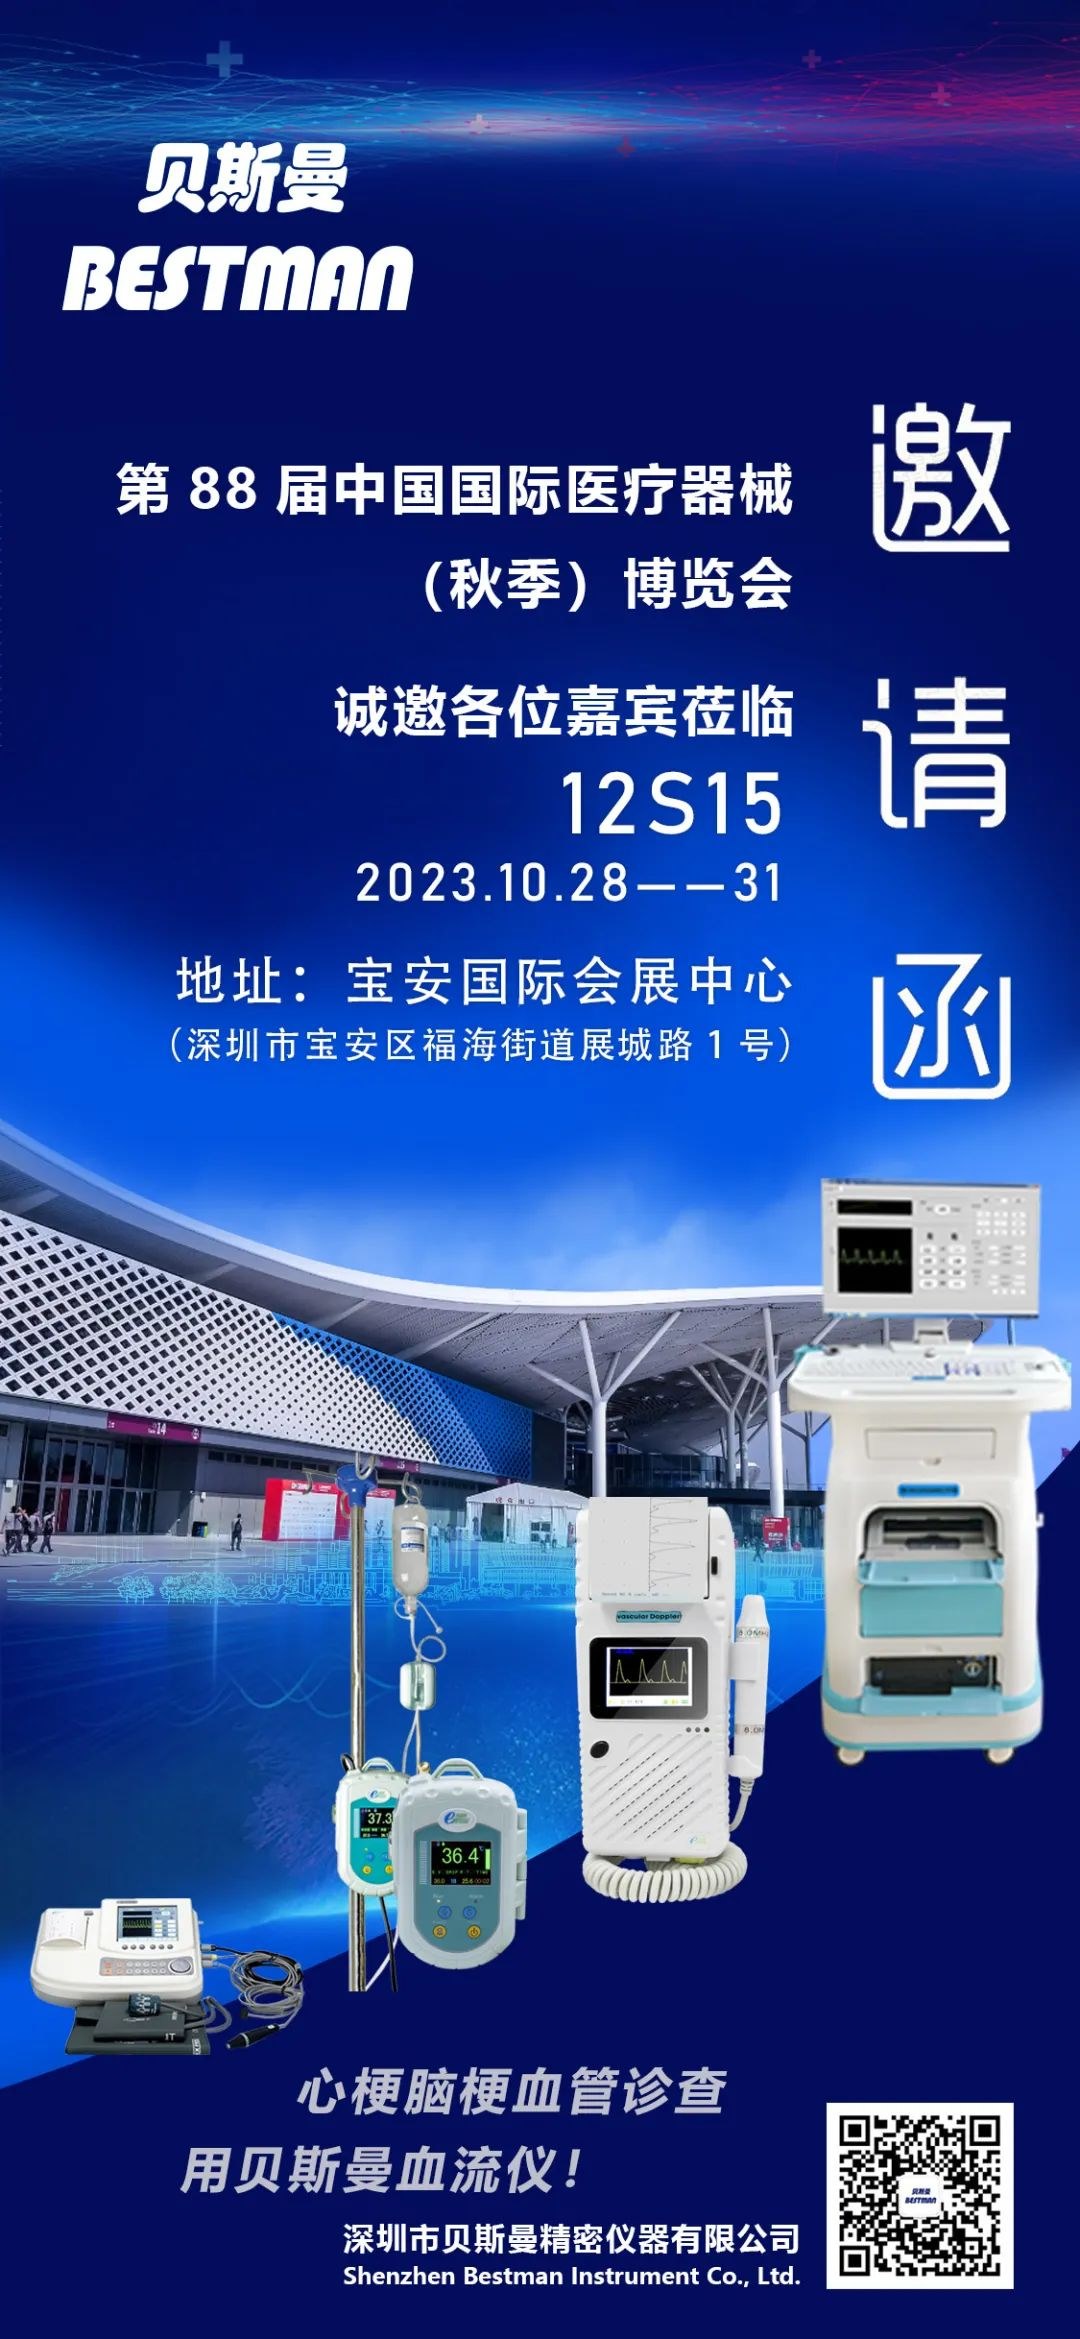 【展会预告】深圳贝斯曼精密仪器即将亮相“第 88 届中国国际医疗器械（秋季）博览会”